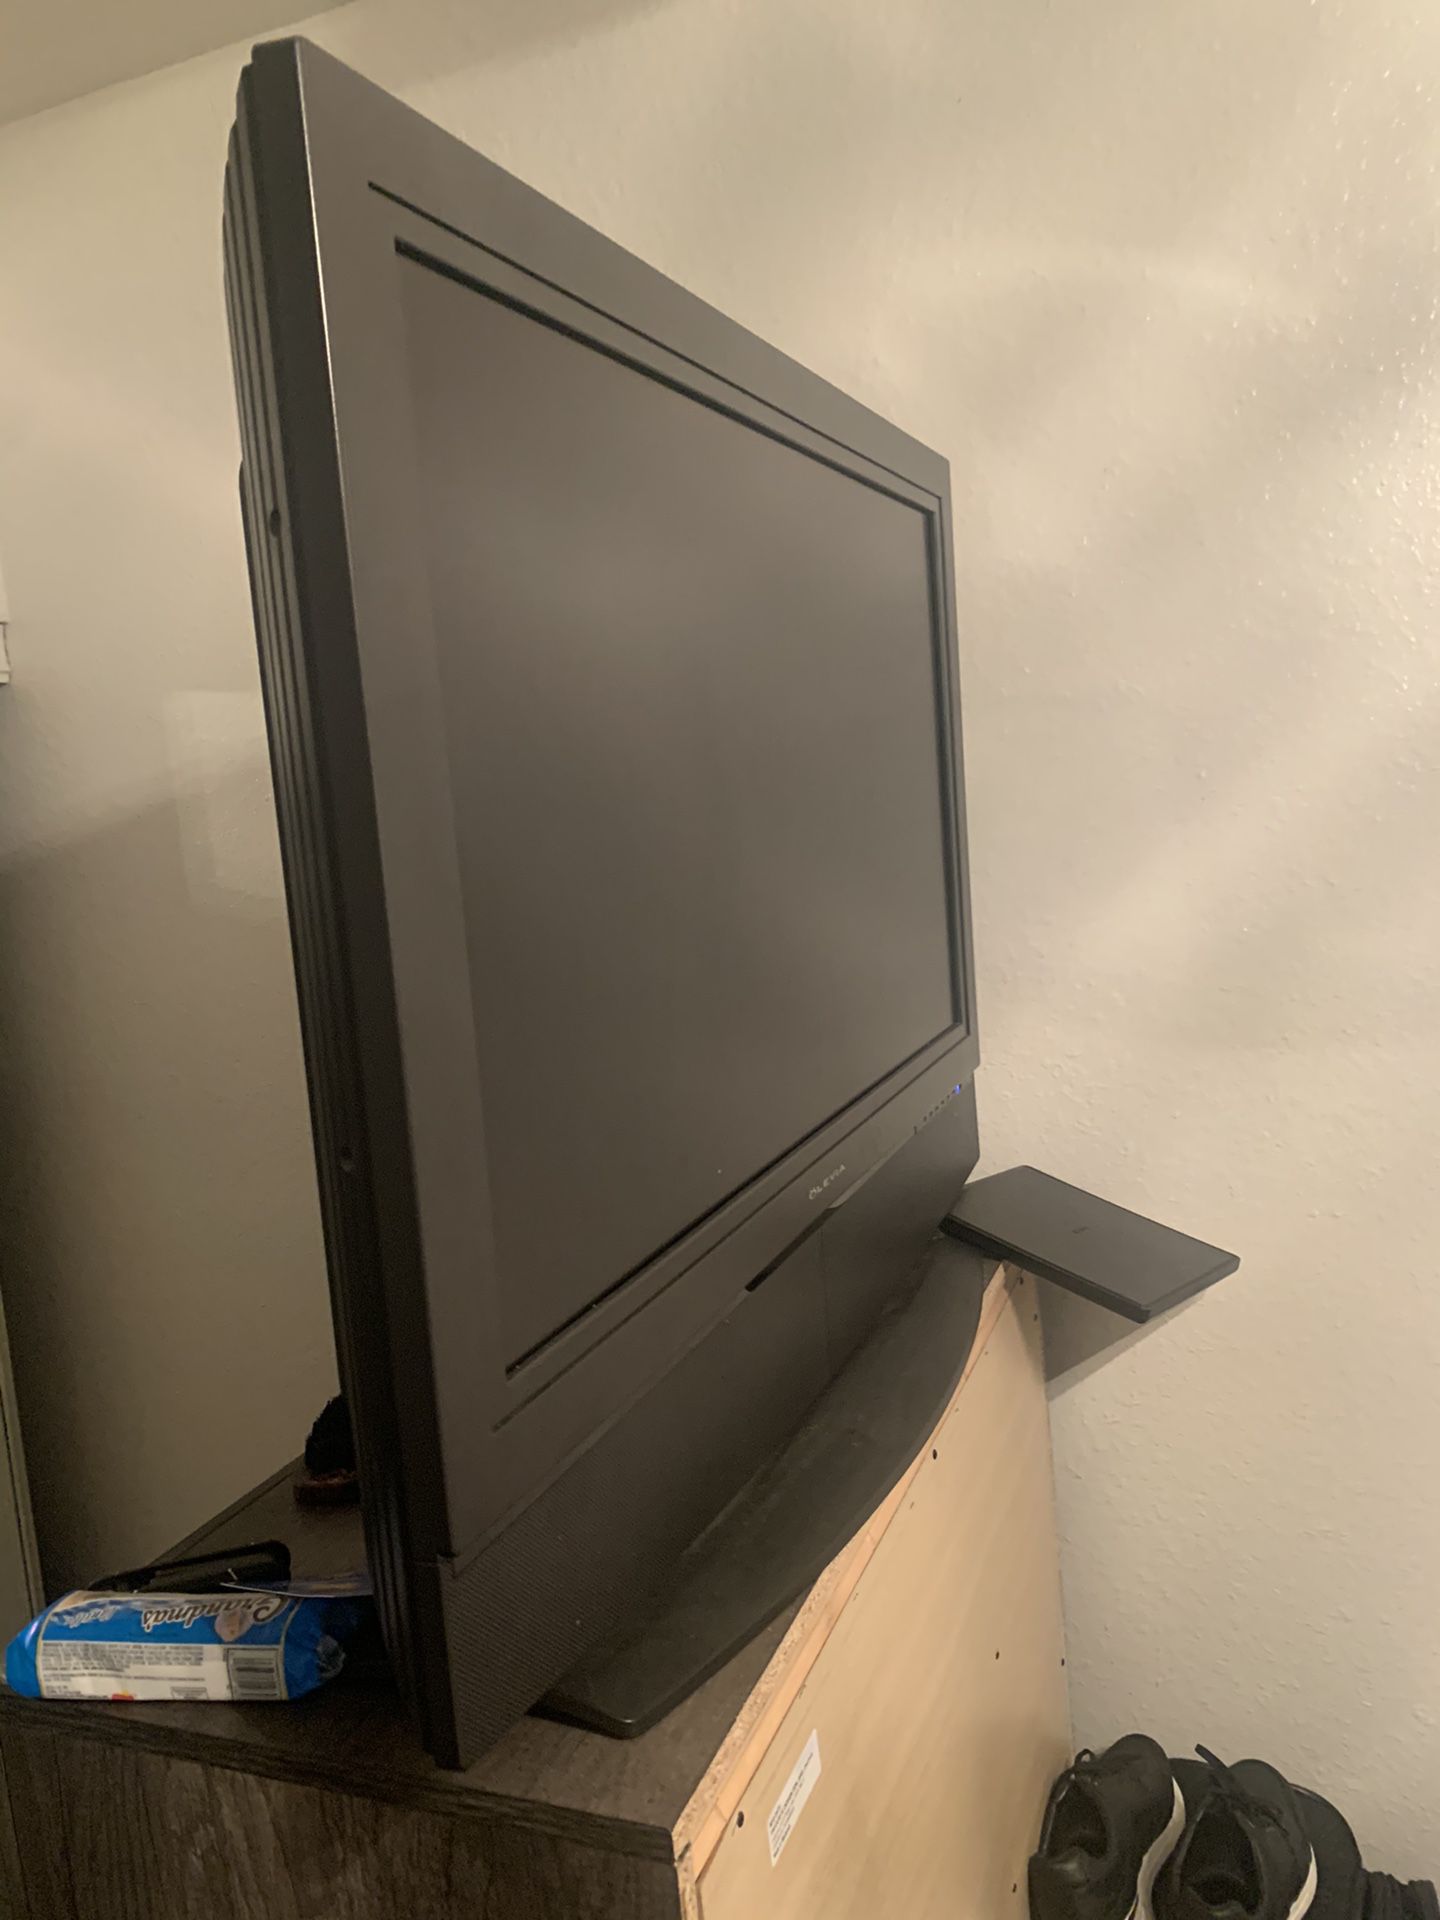 36in flat screen TVs